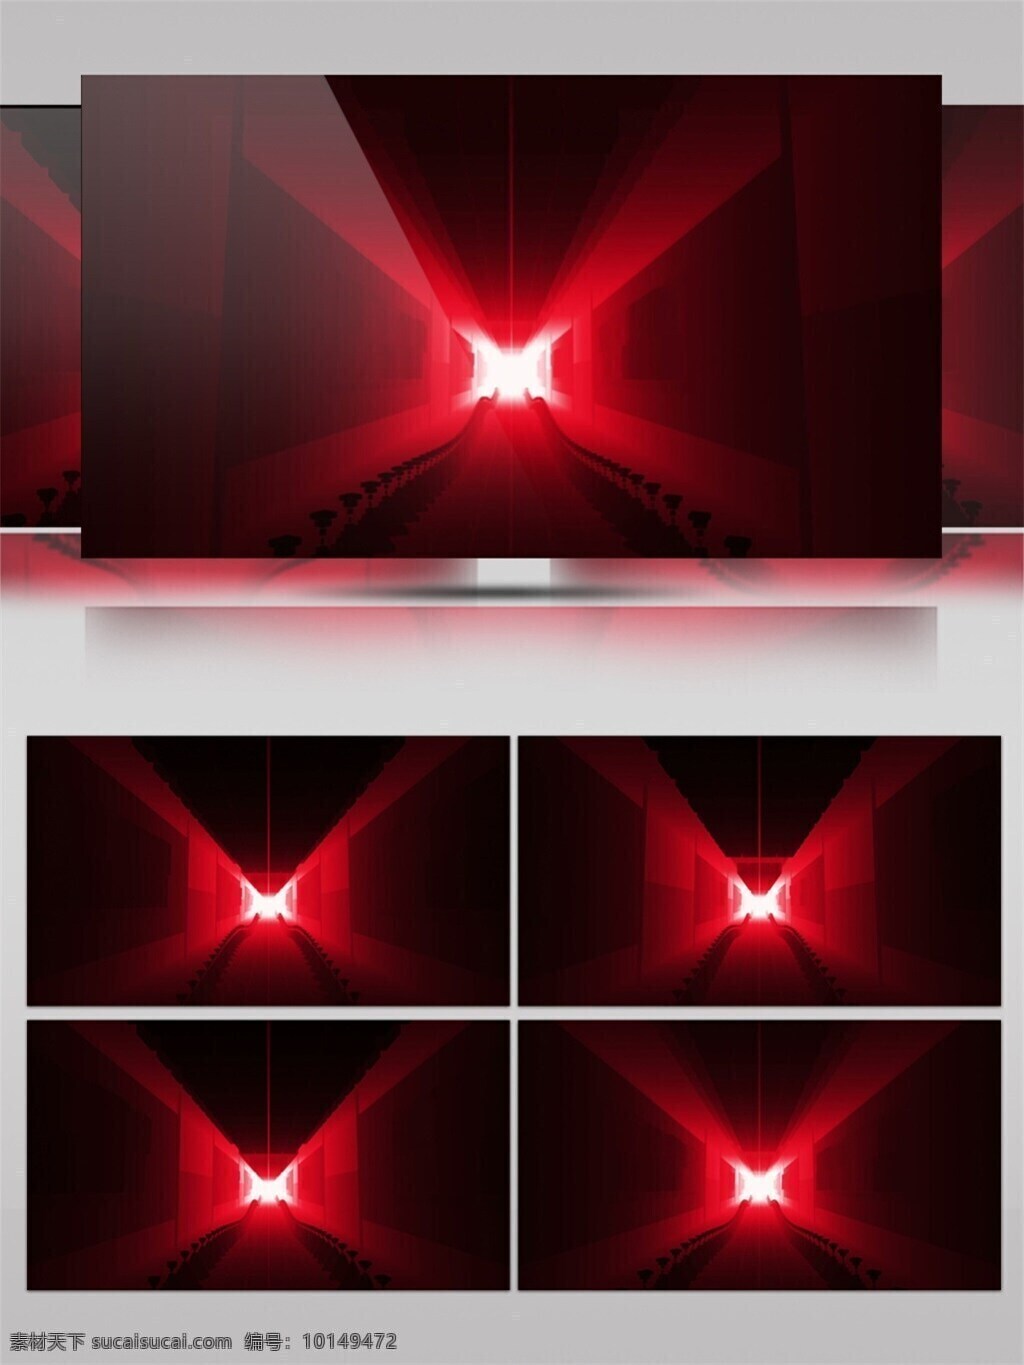 诡异 红光 高清 视频 vj灯光 壁纸图案 动态展示 背景 立体几何 特效 悬疑惊悚 装饰风格